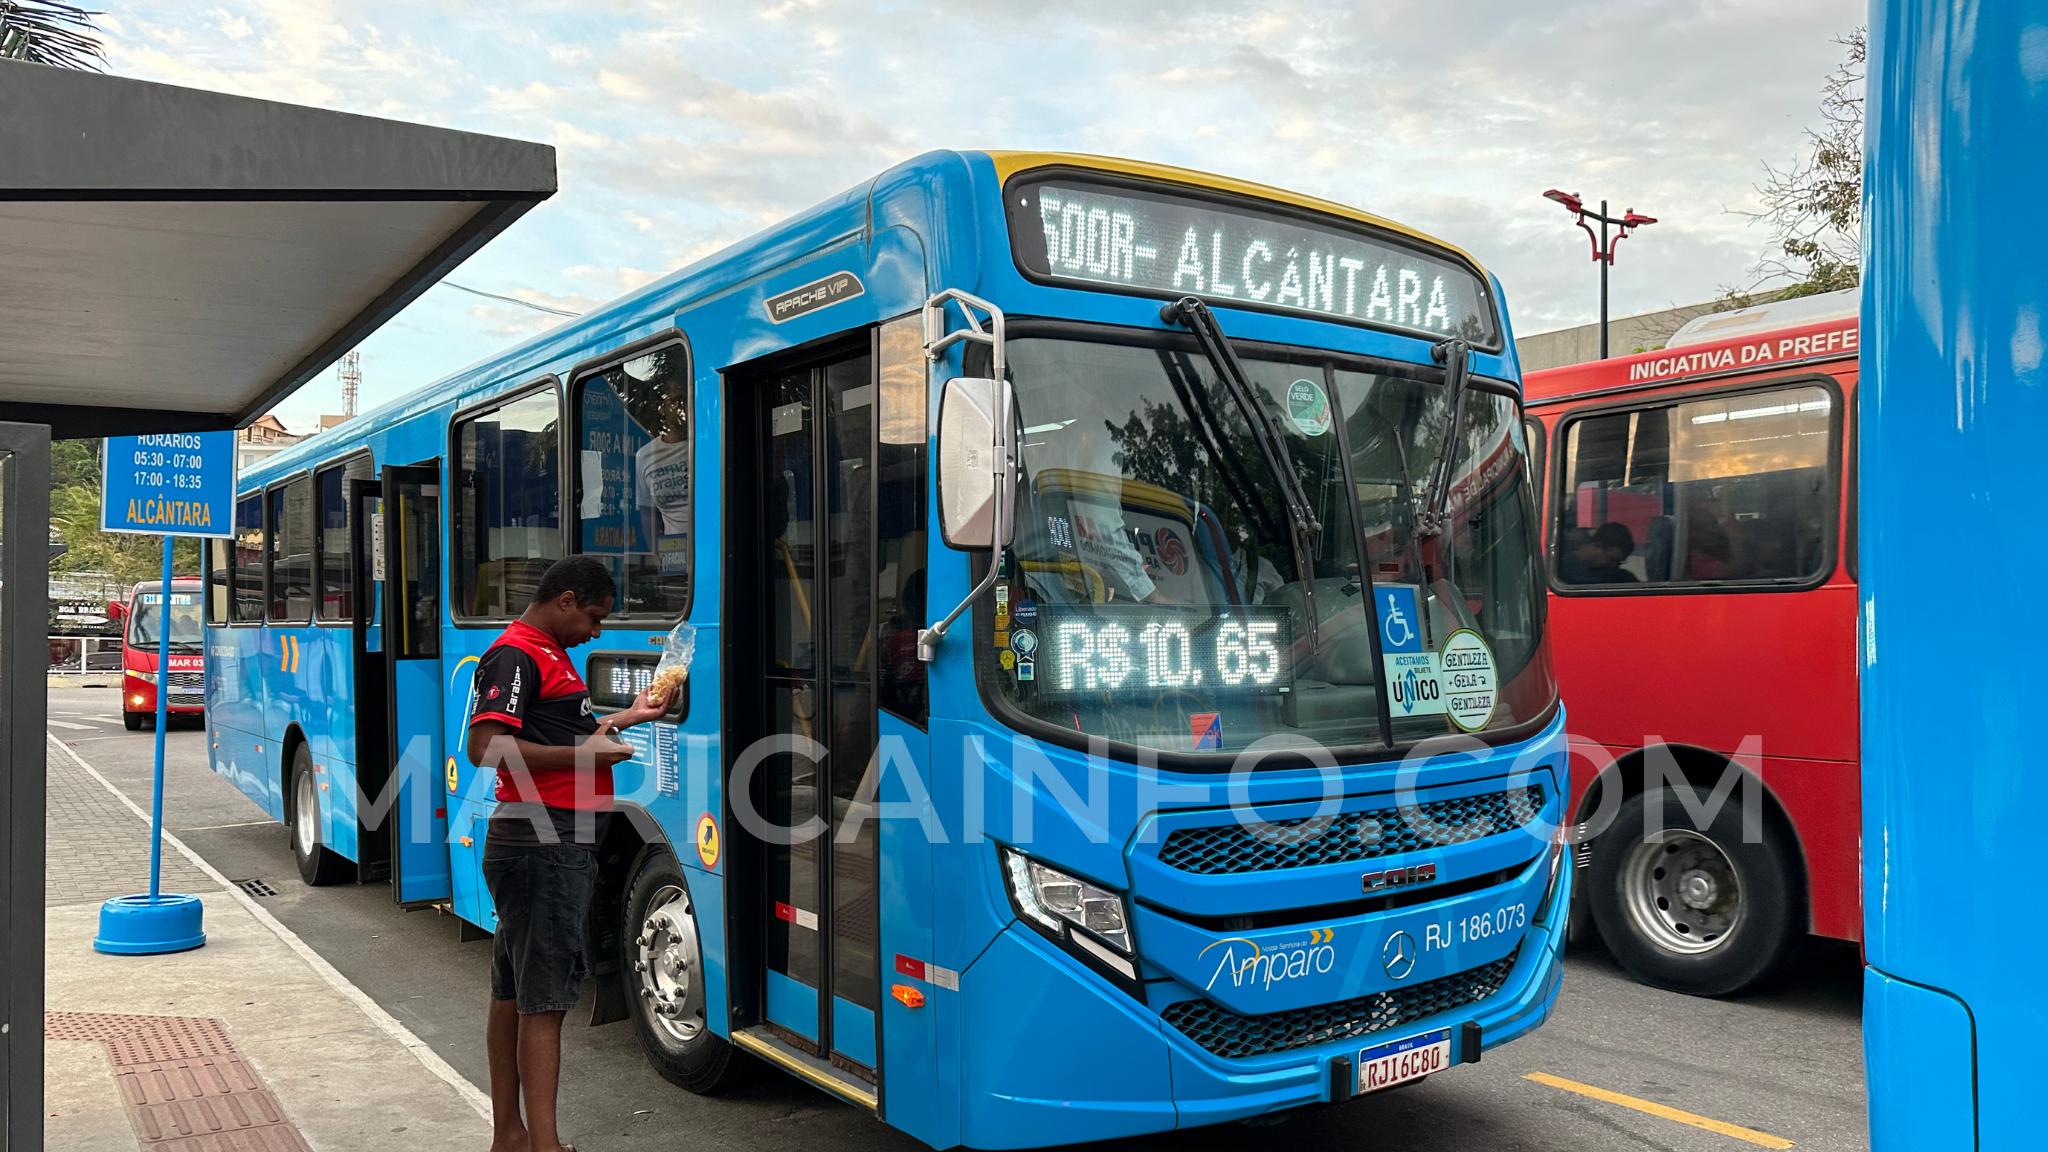 Ônibus Maricá x Alcântara, operado pela Viacao Nossa Senhora do Amparo. (Foto: João Henrique / Maricá Info)